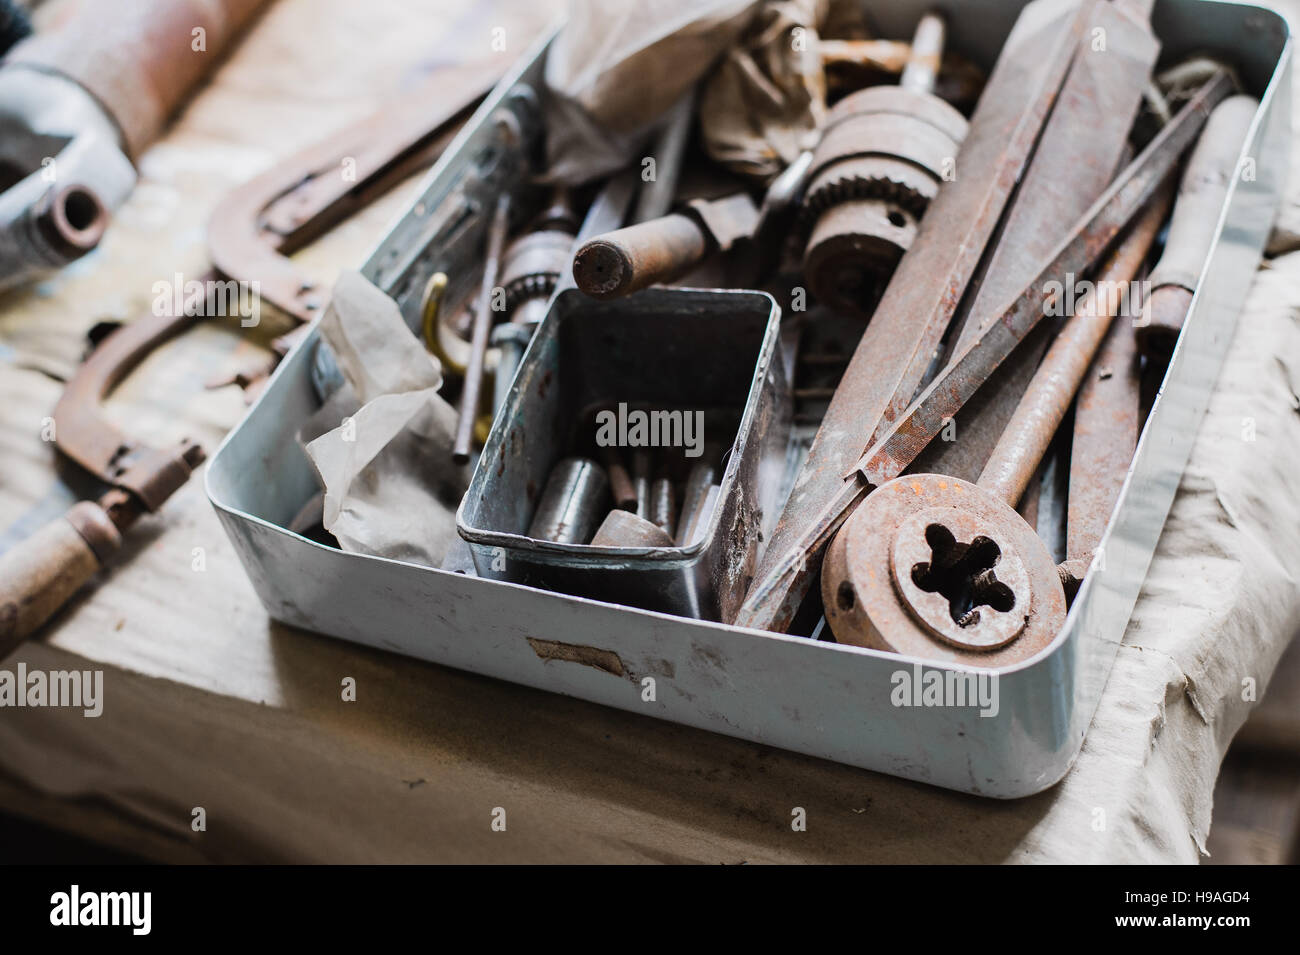 La boîte à outils de la vie toujours avec des clous râpe et vieux outils Banque D'Images